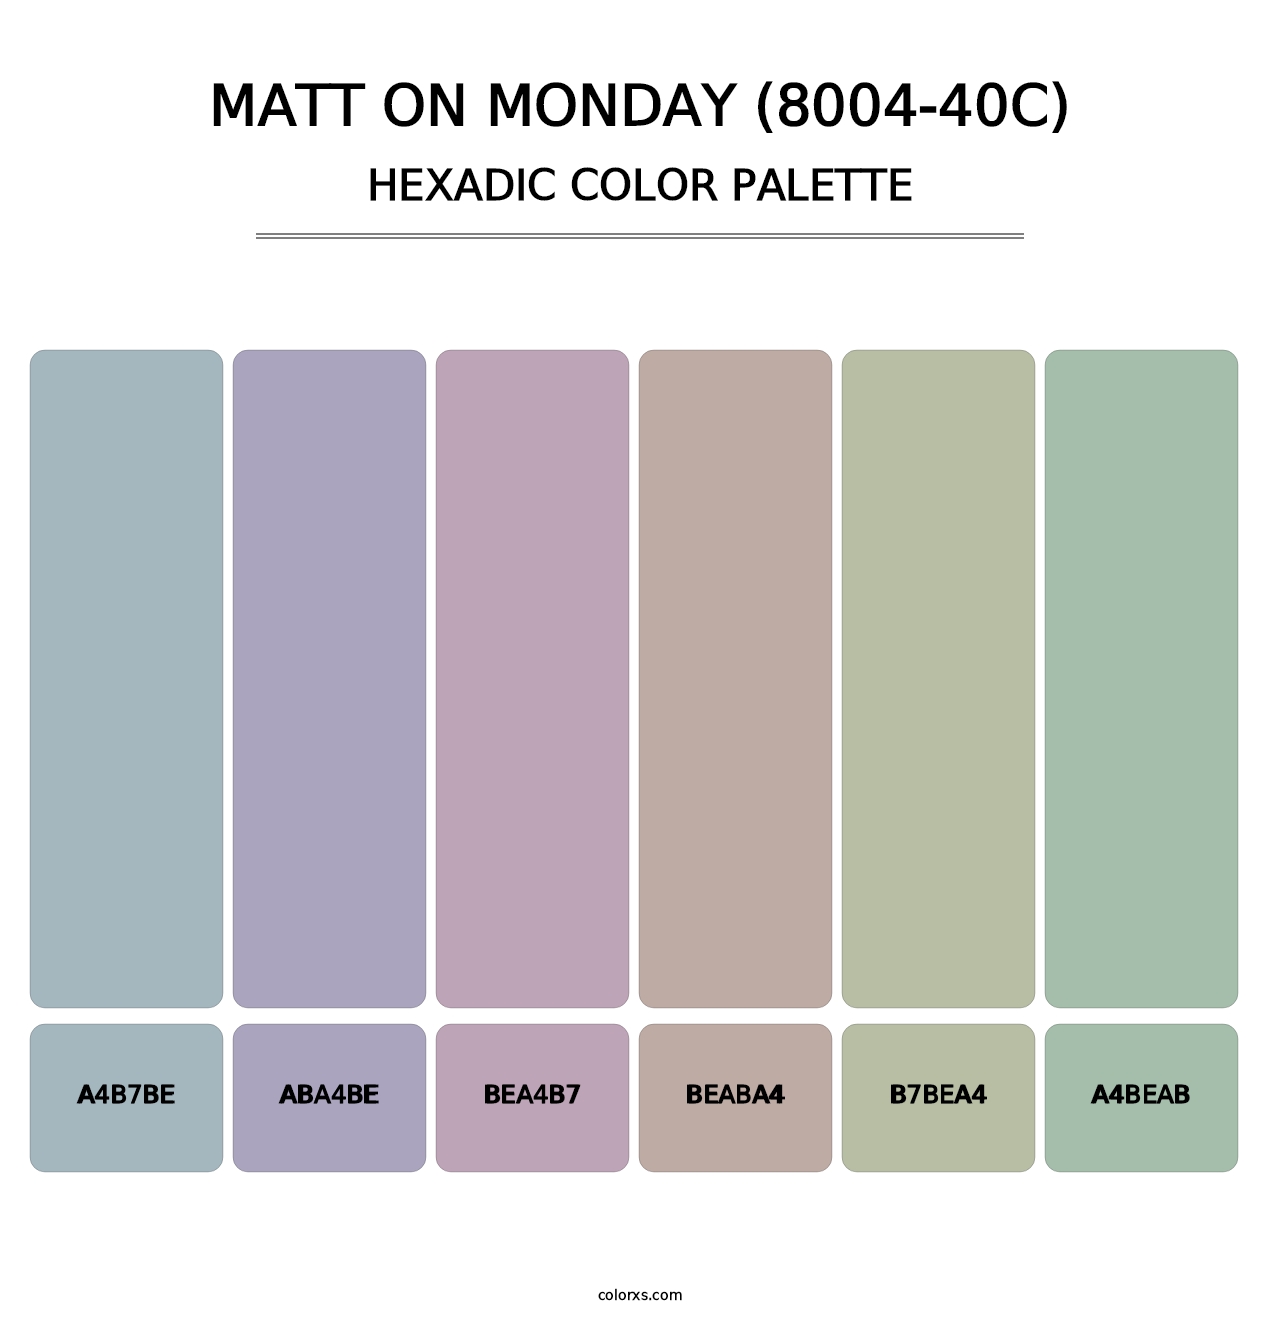 Matt on Monday (8004-40C) - Hexadic Color Palette